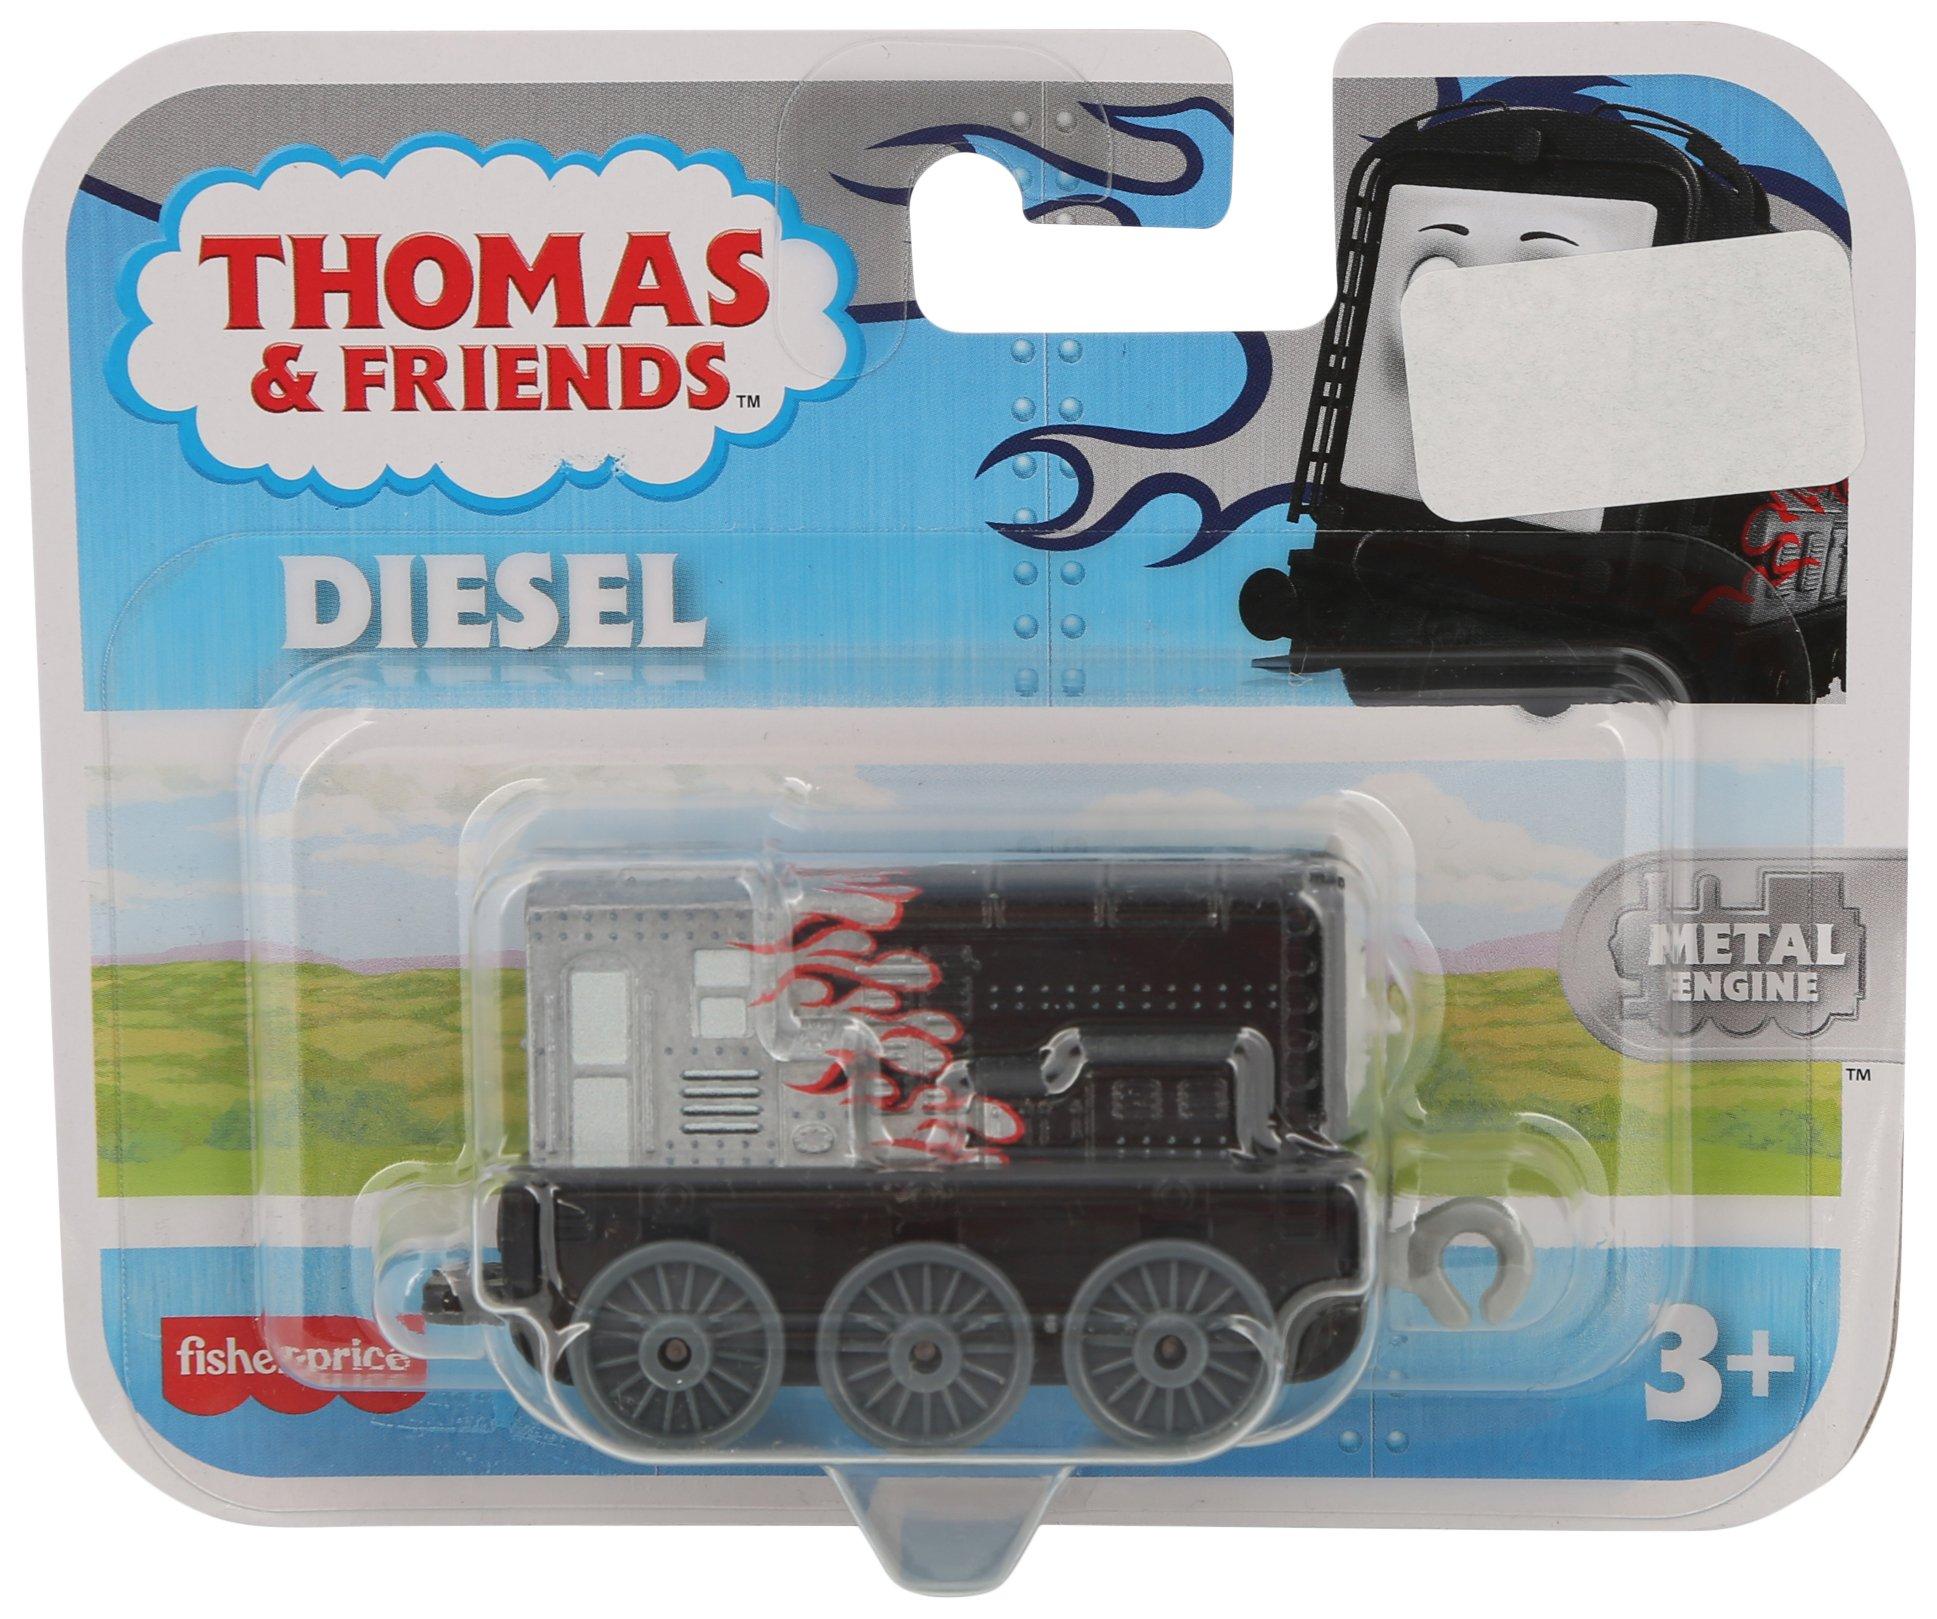 Thomas & Friends Diesel Toy Engine